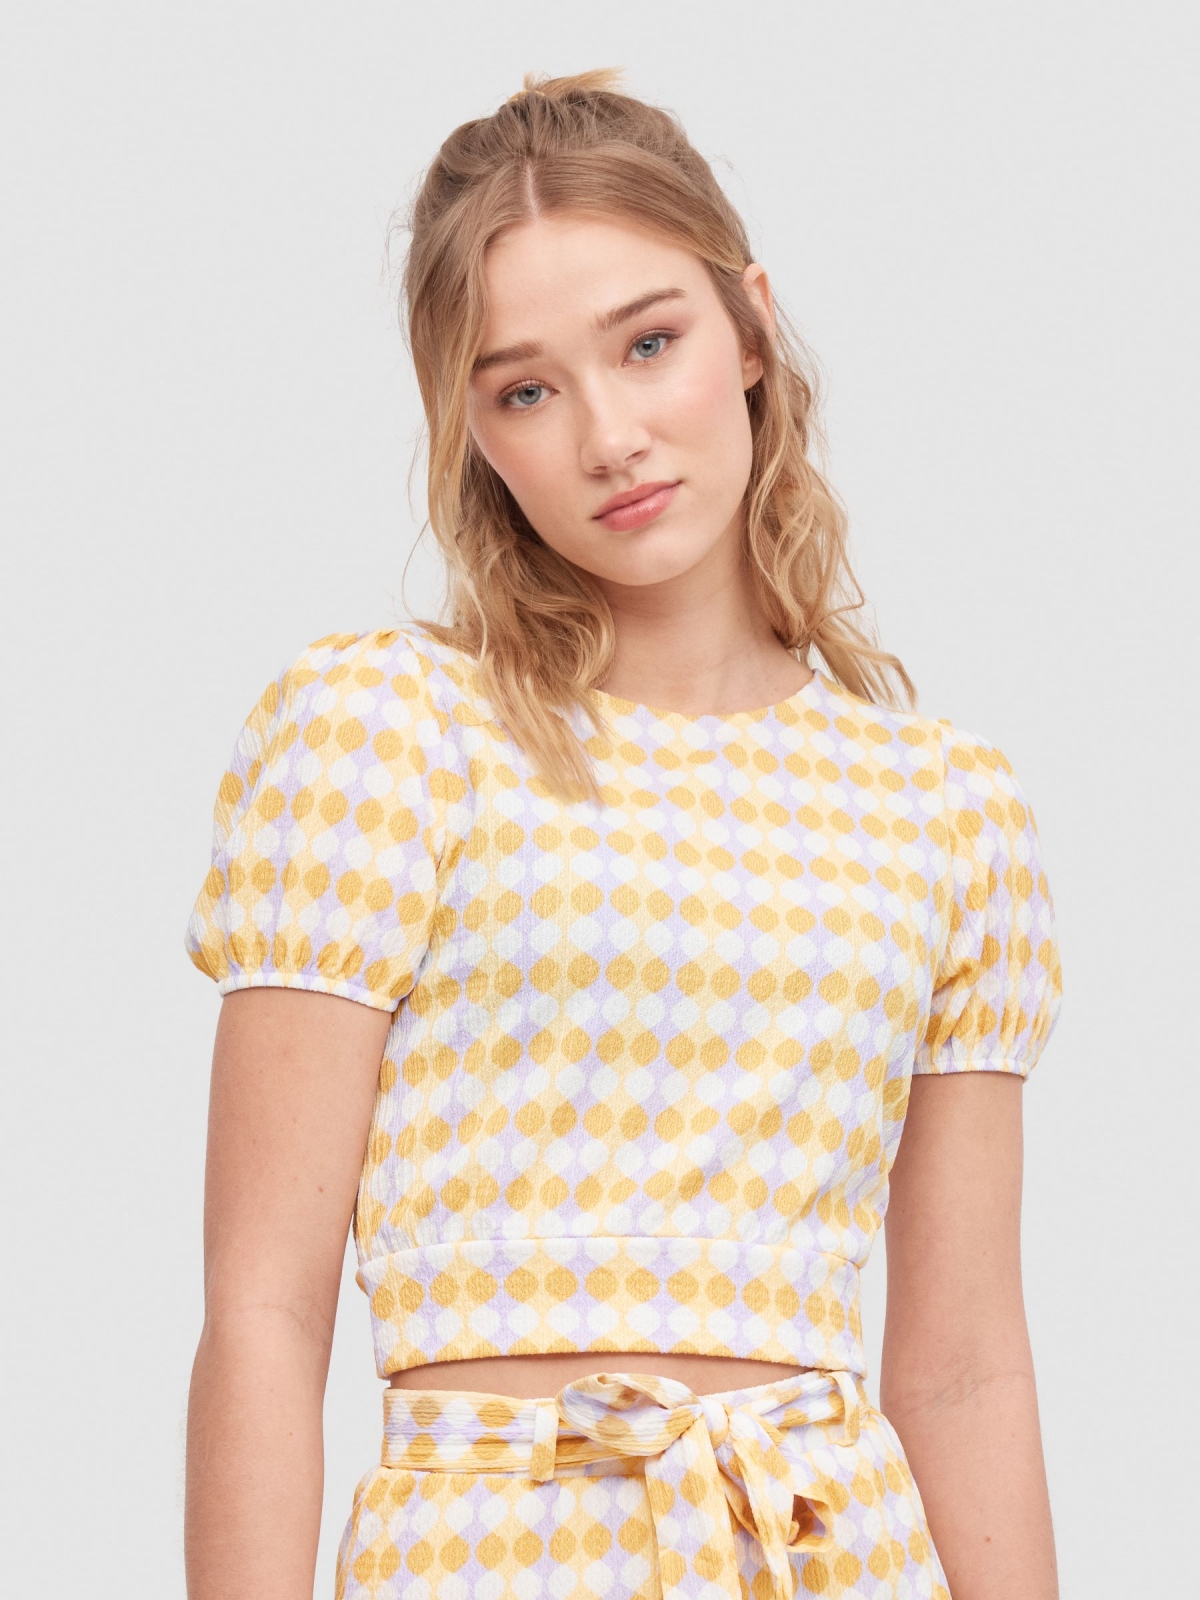 Camiseta estampado sixties con lazo multicolor vista media frontal